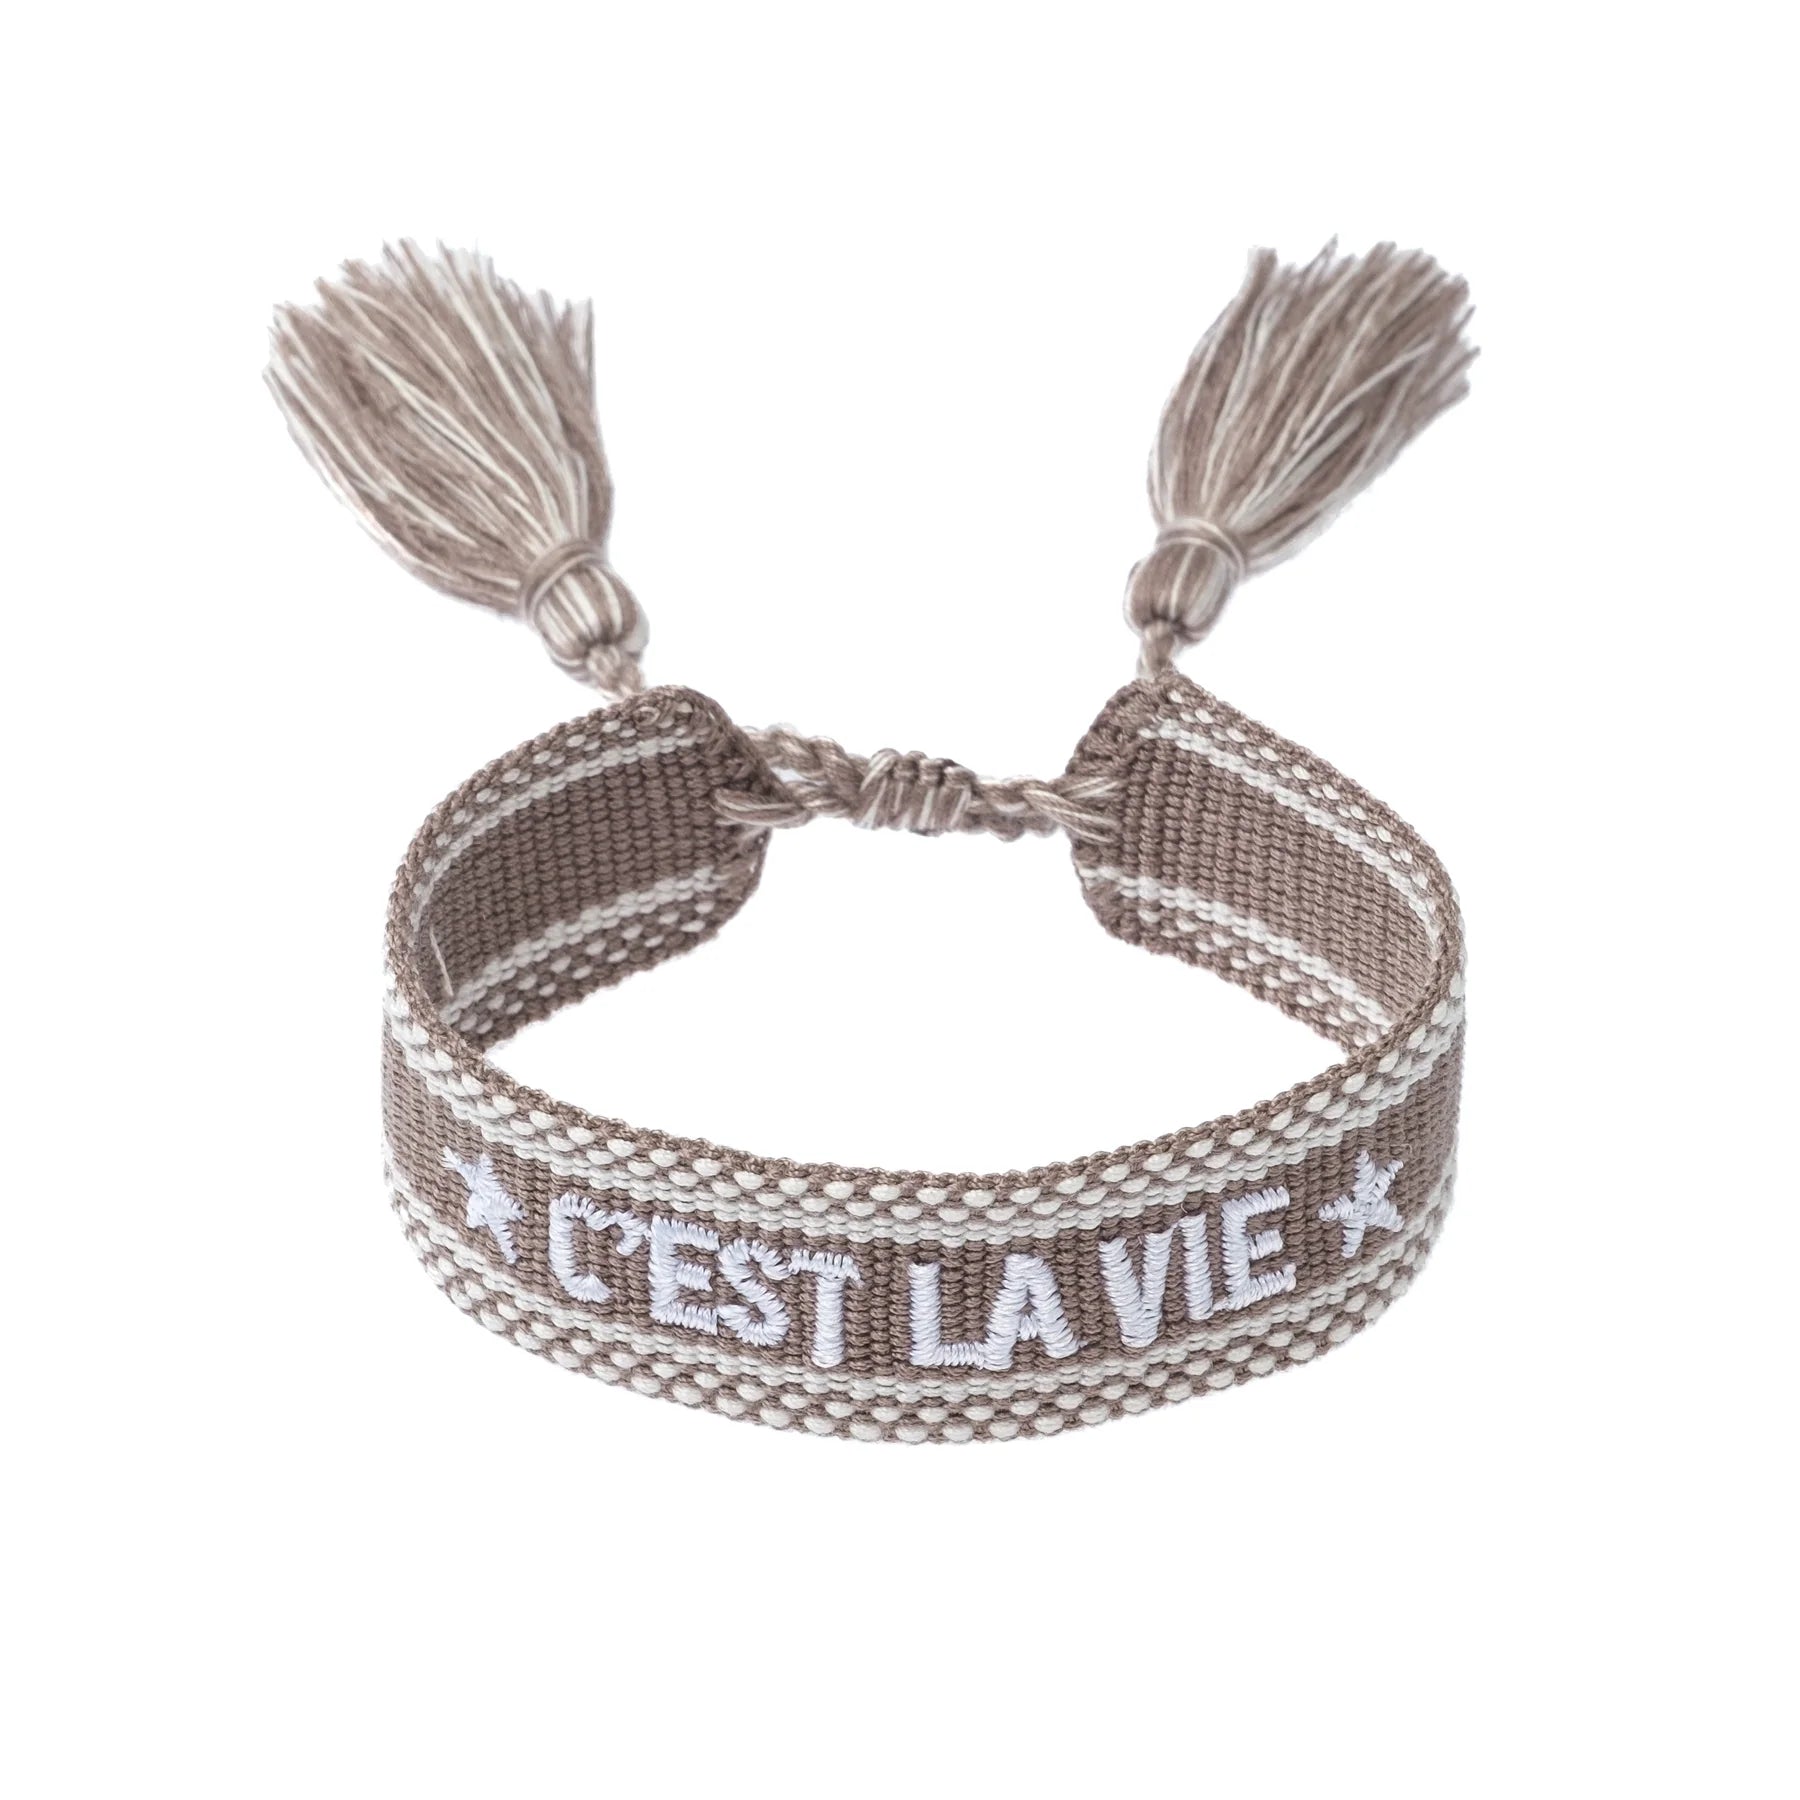 Woven Bracelet "C'est La Vie" Taupe